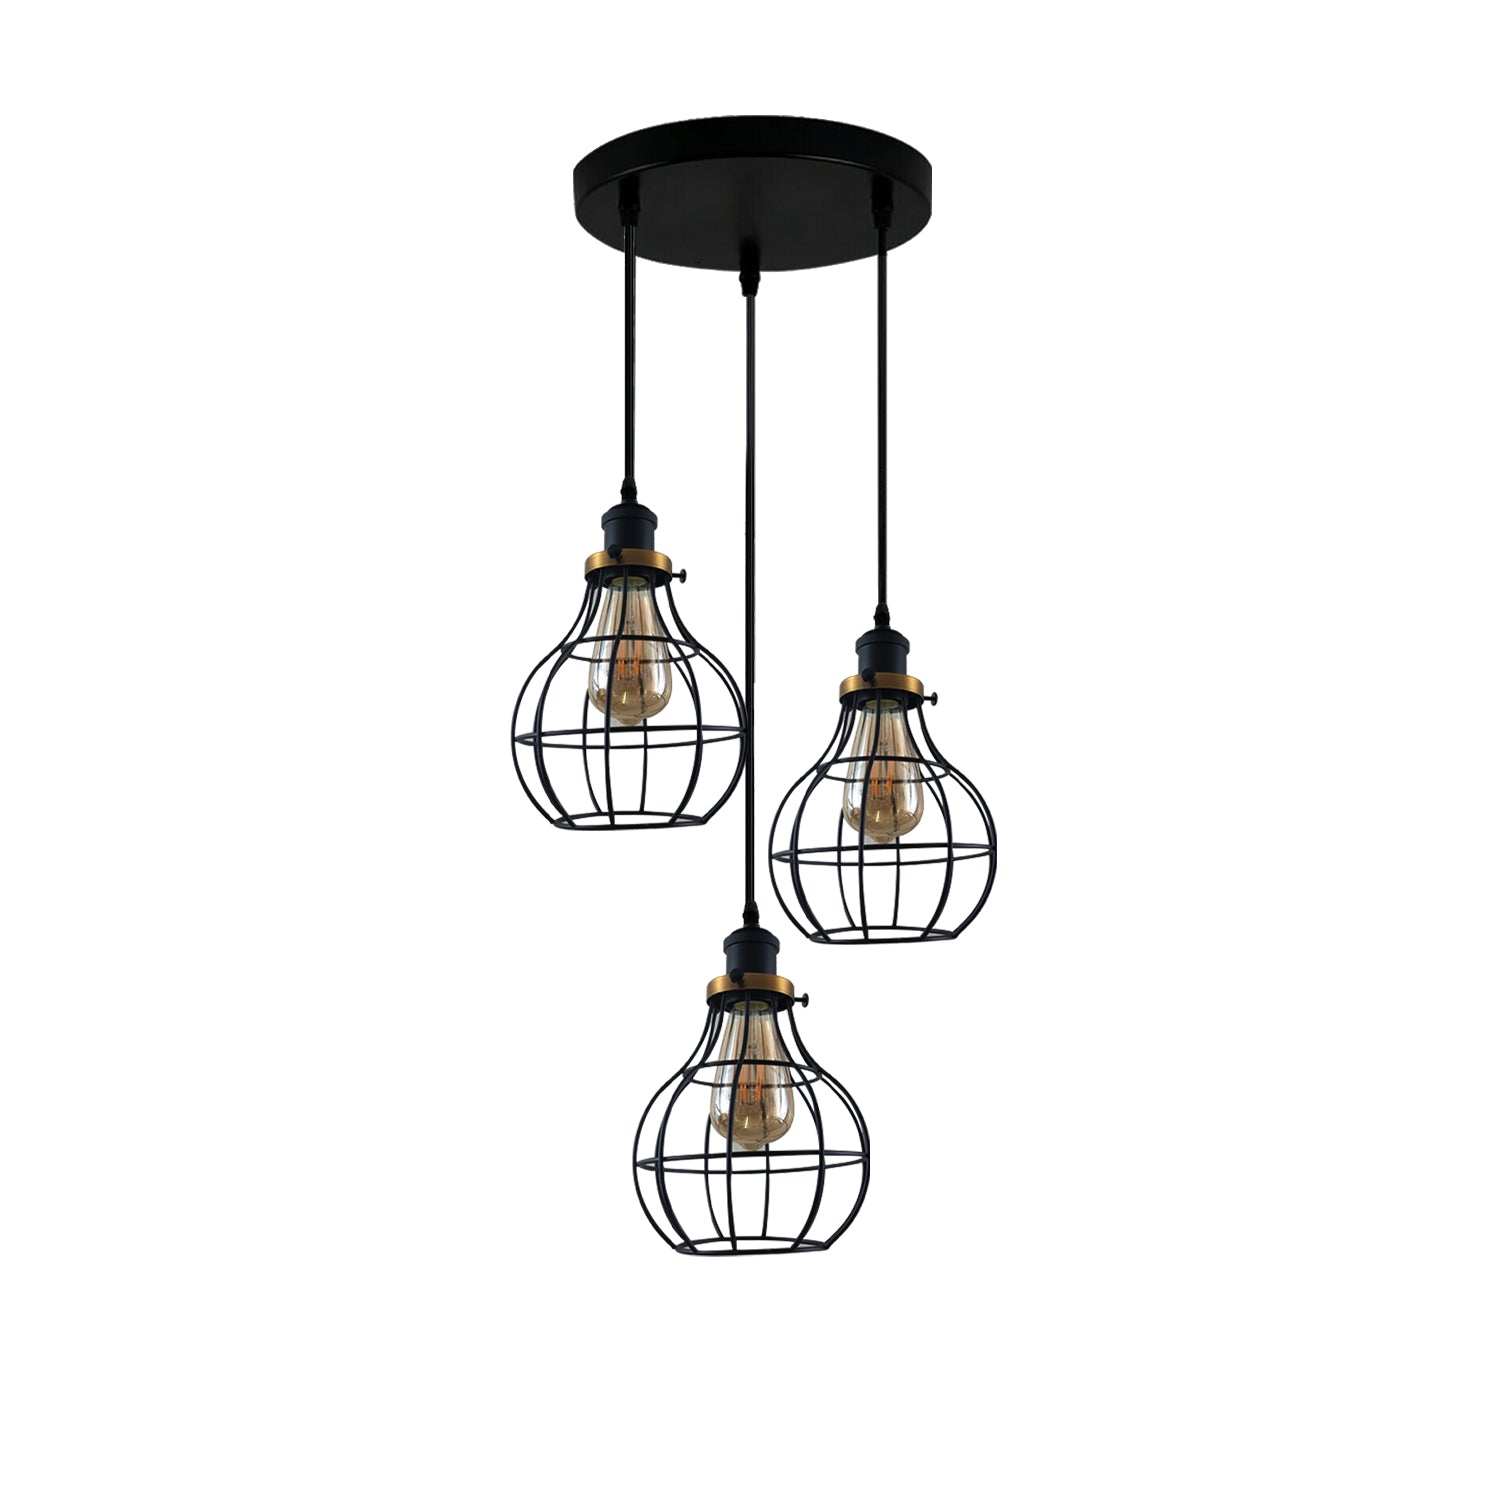 LEDSone industrial vintage 3 round Way Ceiling Pendant Cage Cluster Light Fitting~3233 - LEDSone UK Ltd